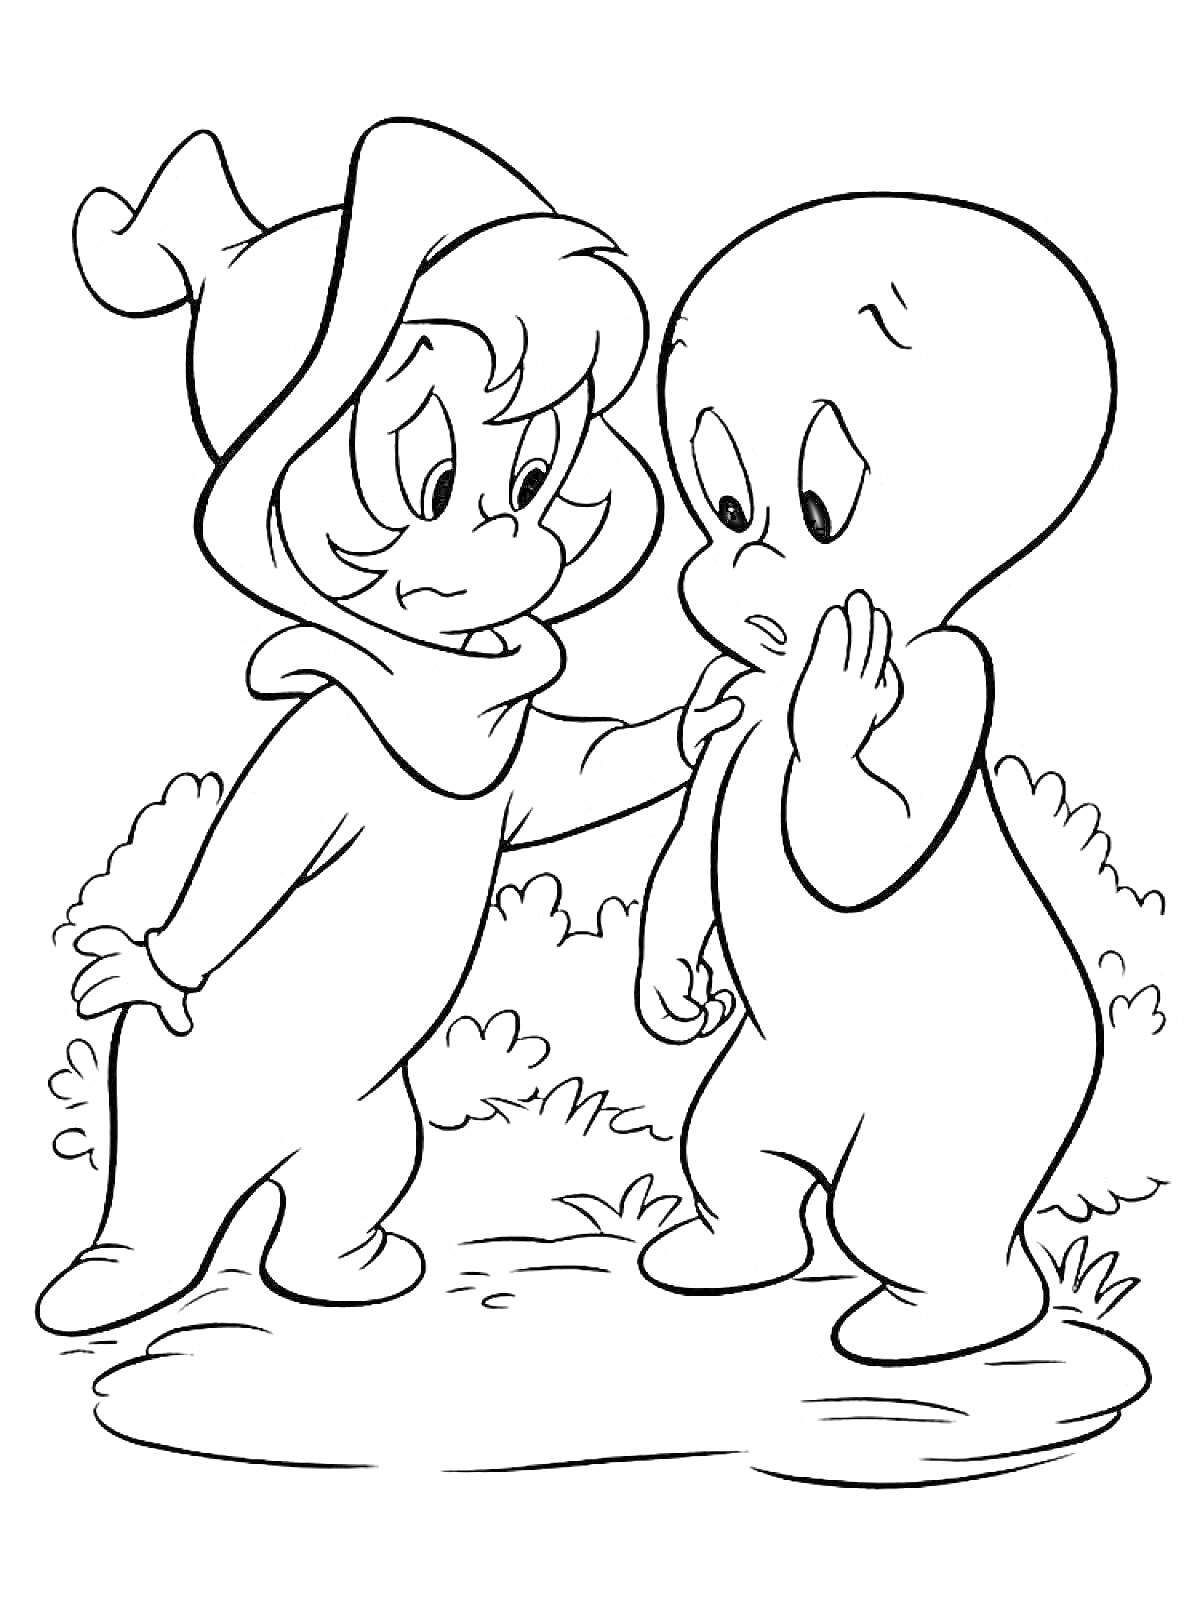 Раскраска Два привидения в лесу, Каспер и его друг в капюшоне